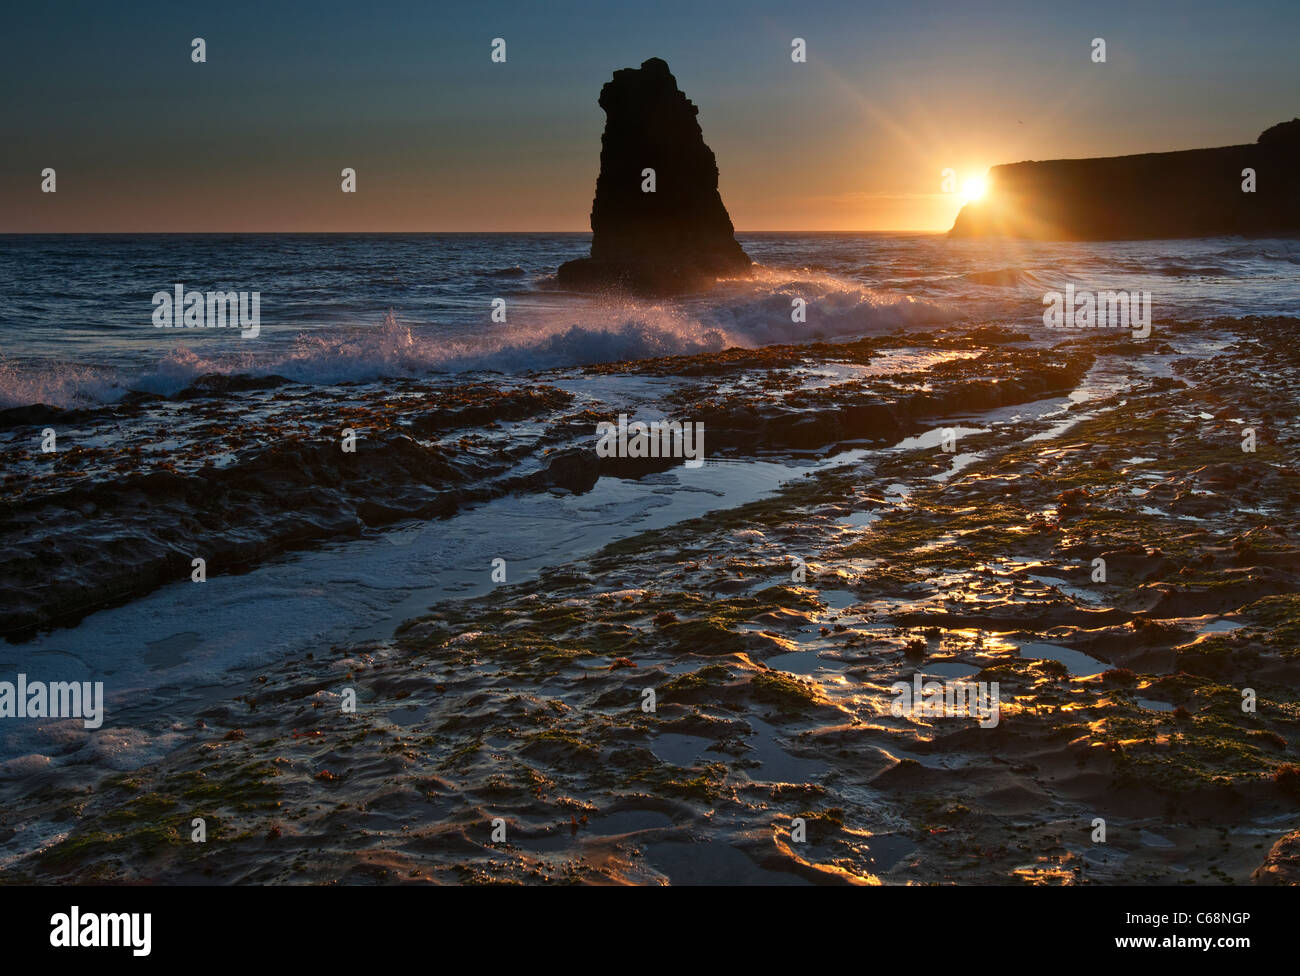 Drammatica vista di una pila di mare nella spiaggia di Davenport, Santa Cruz. Foto Stock